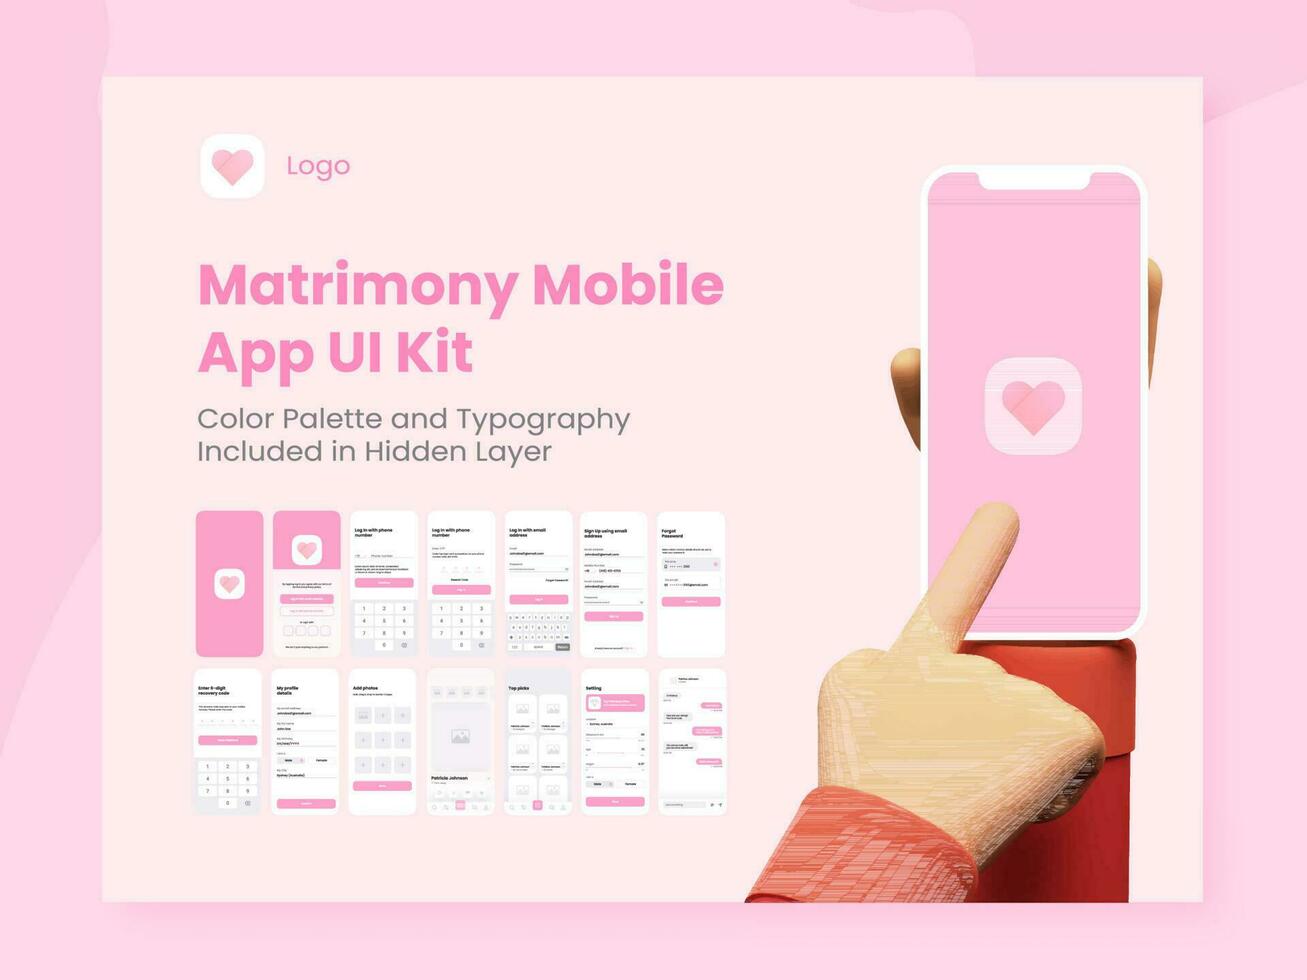 äktenskap app ui utrustning för mottaglig mobil app eller hemsida med annorlunda skärmar som logga in, detaljer, skapa användare profil. vektor